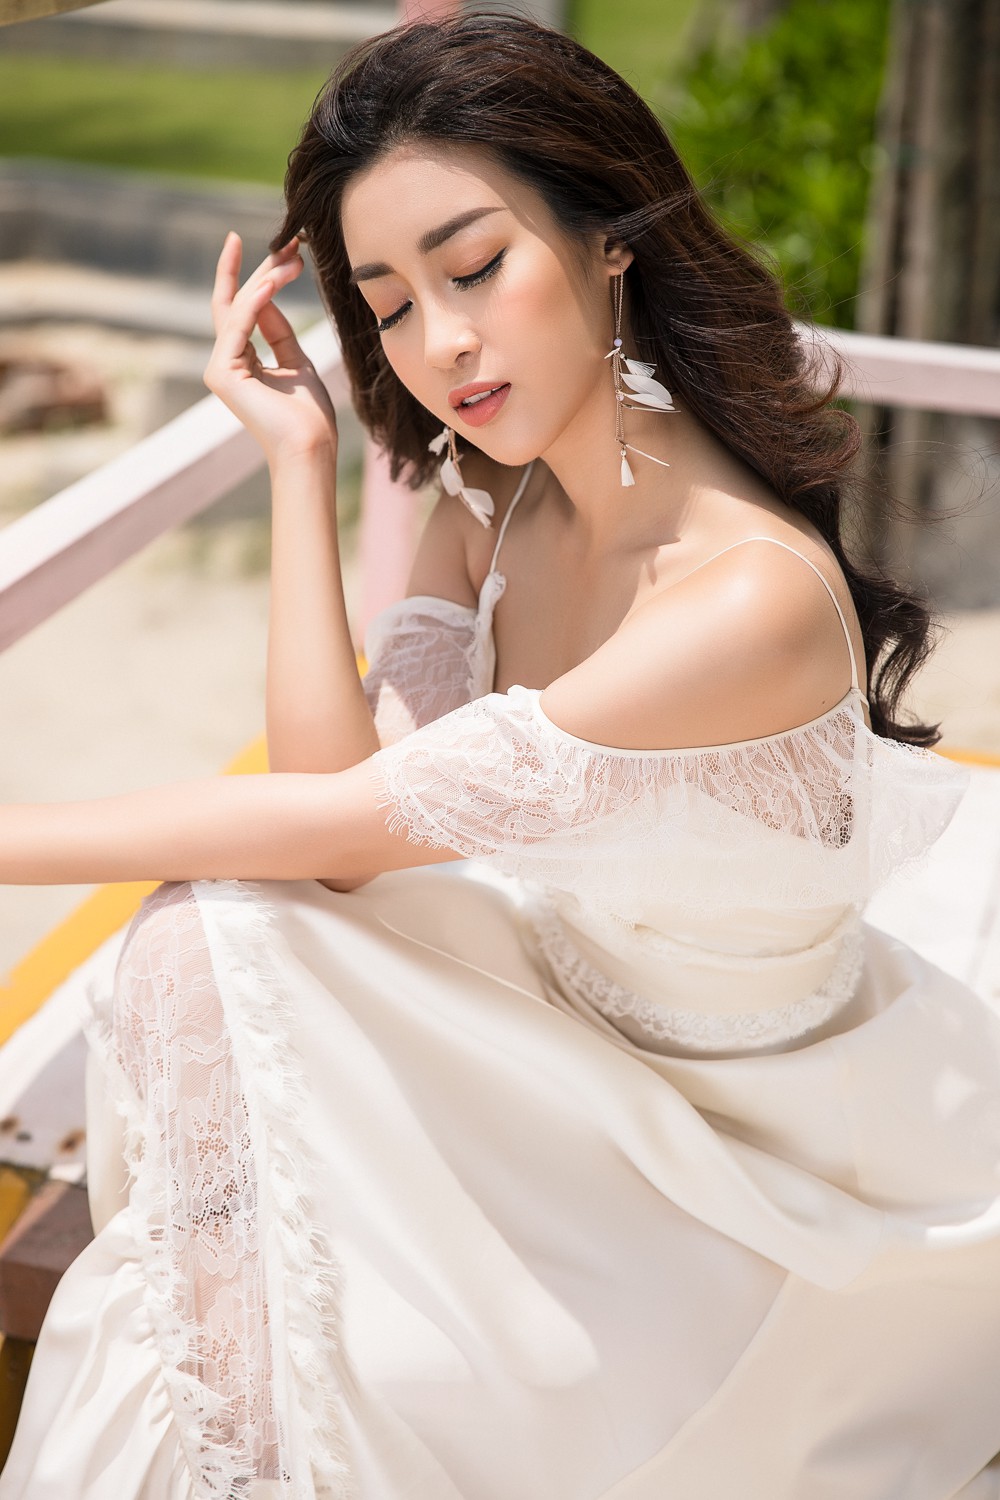 Ghen tỵ với bộ ảnh đẹp lung linh của Hội bạn thân Hoa hậu Mỹ Linh - Thùy Dung - Thanh Tú - Ảnh 7.